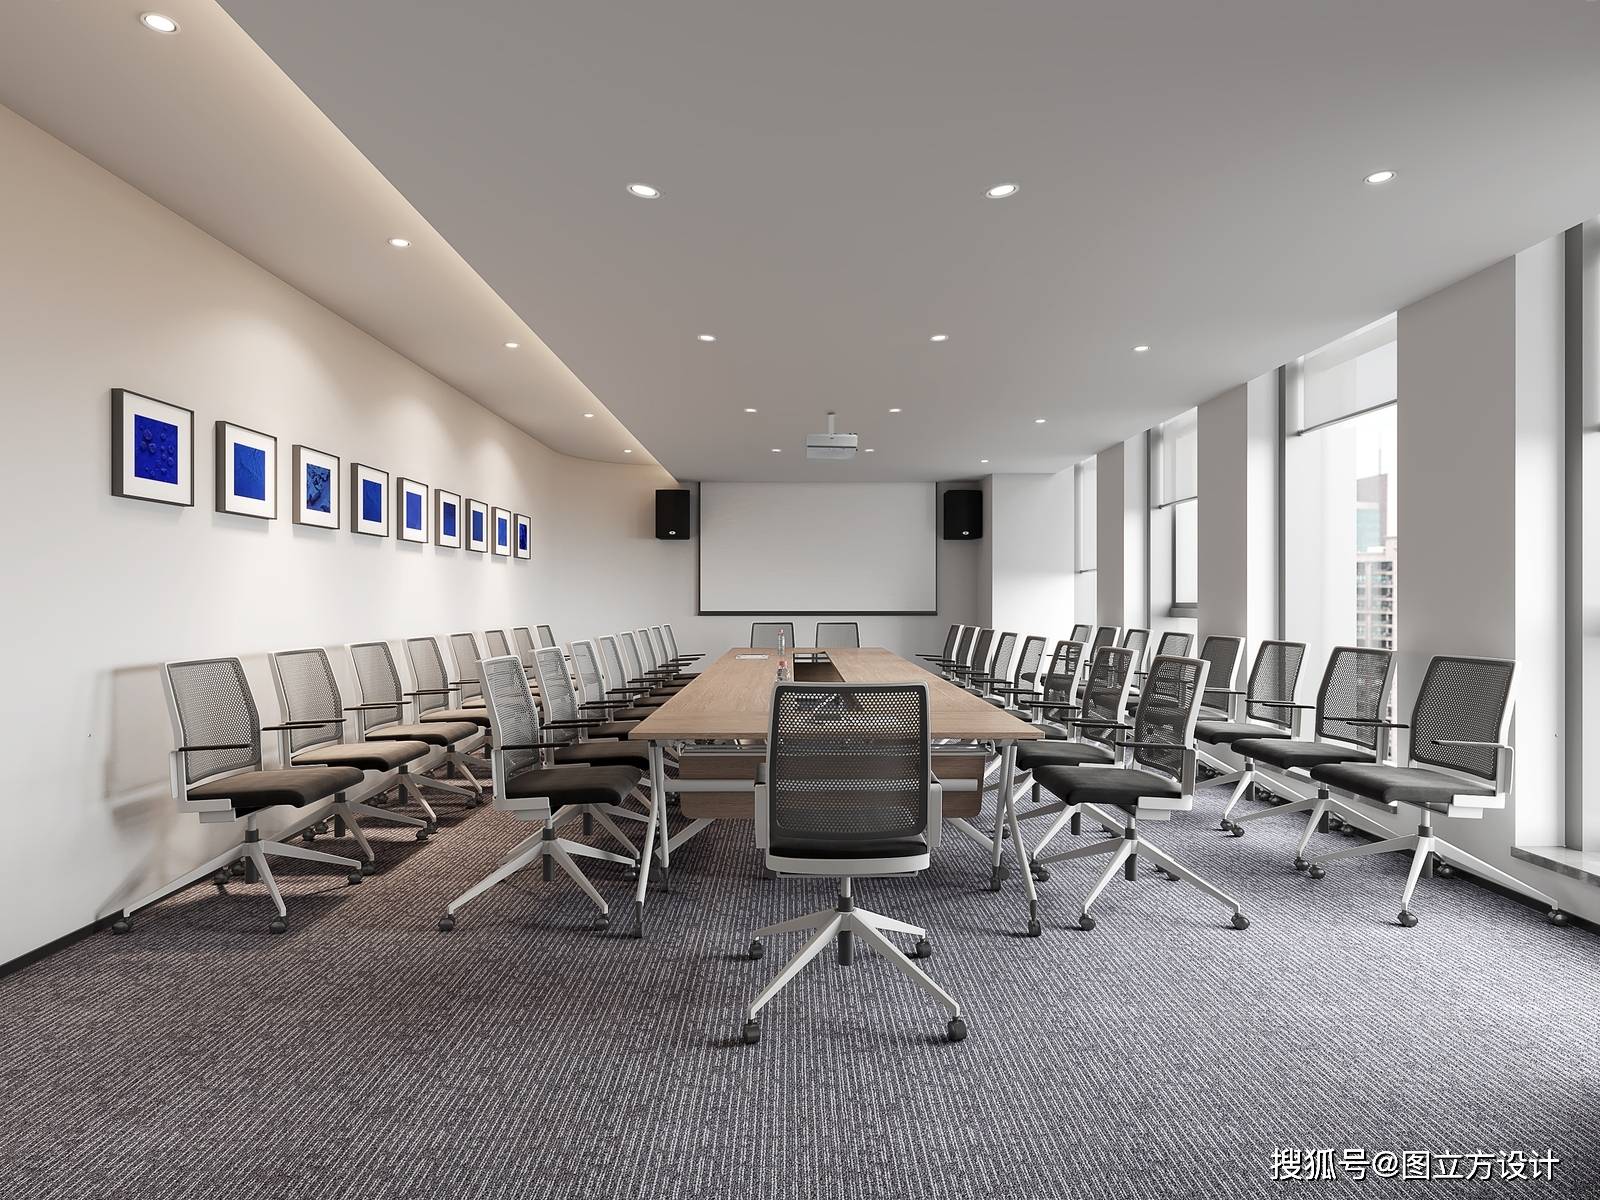 小型会议室效果图设计——打造高效沟通空间